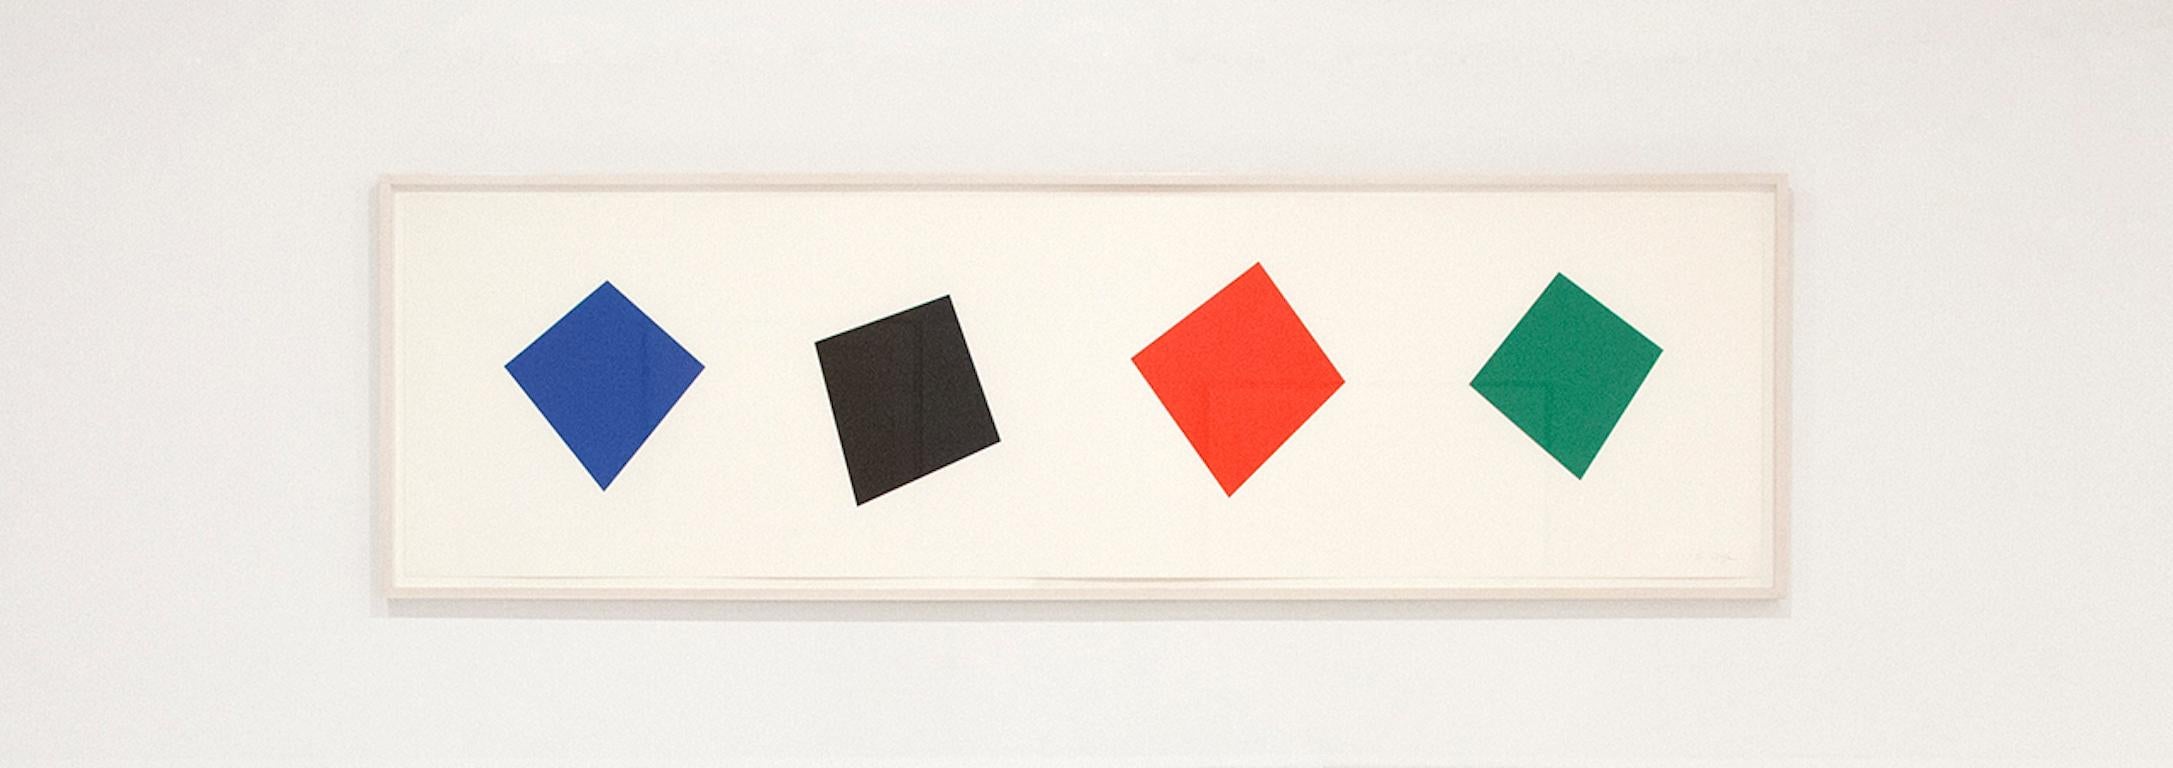 Blau/Schwarz / Rot/Grün  – Print von Ellsworth Kelly